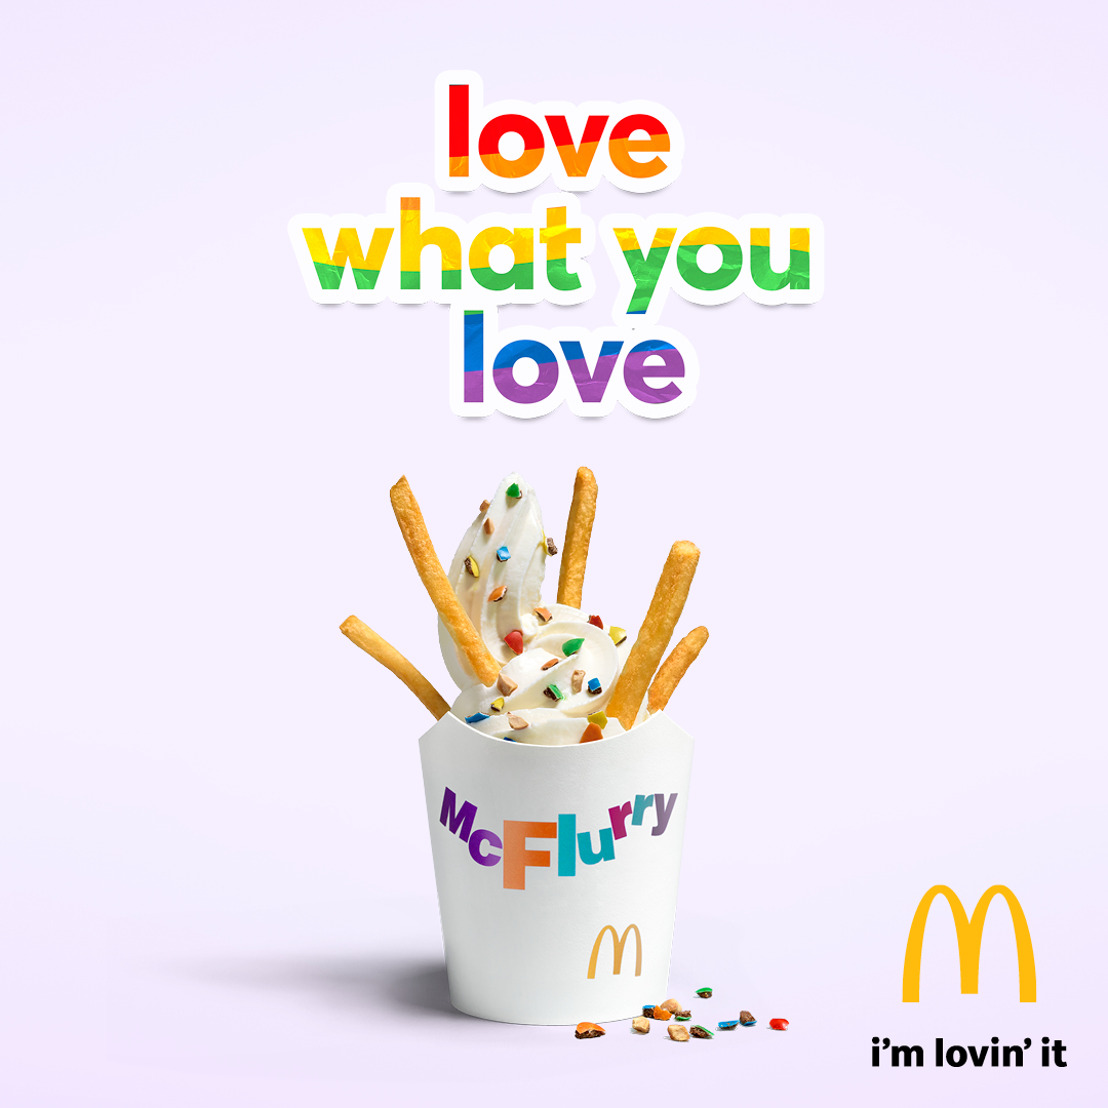 McDonald's et TBWA utilisent des produits McDo iconiques pour encourager chacun à aimer en toute liberté durant la Belgian Pride.